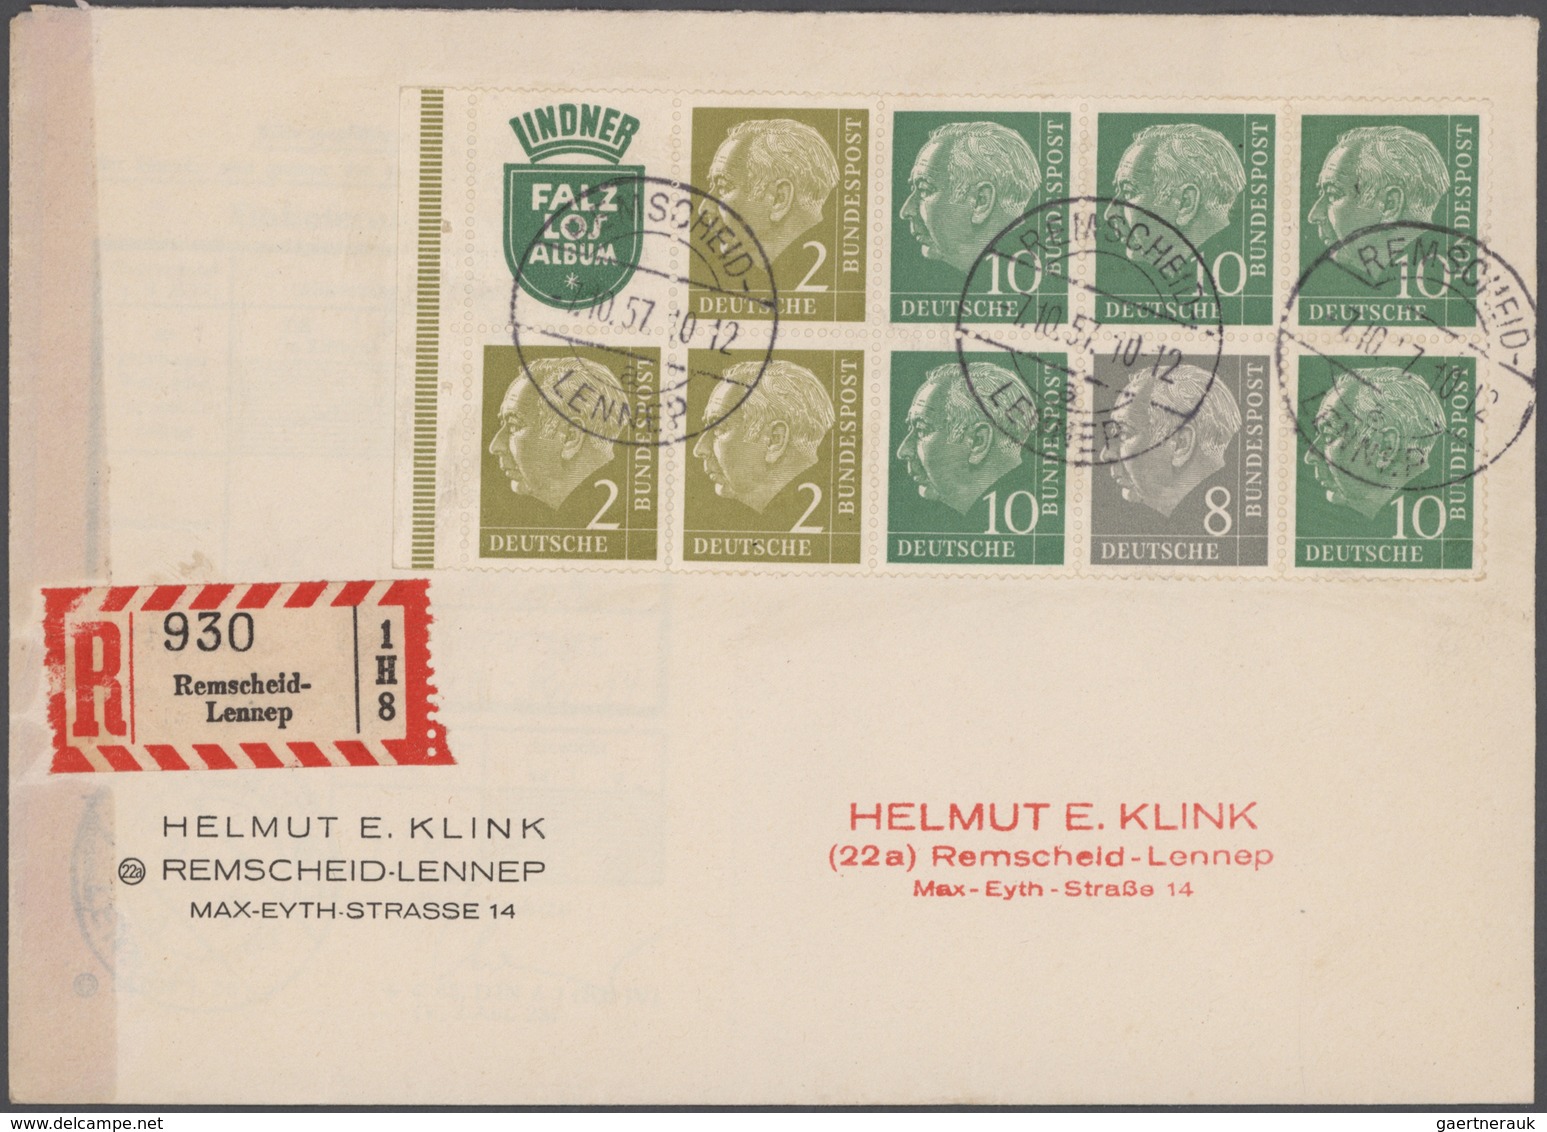 Bundesrepublik Deutschland: 1949/2008, vielseitiger und ergiebiger Posten von ca. 620 Briefen und Ka